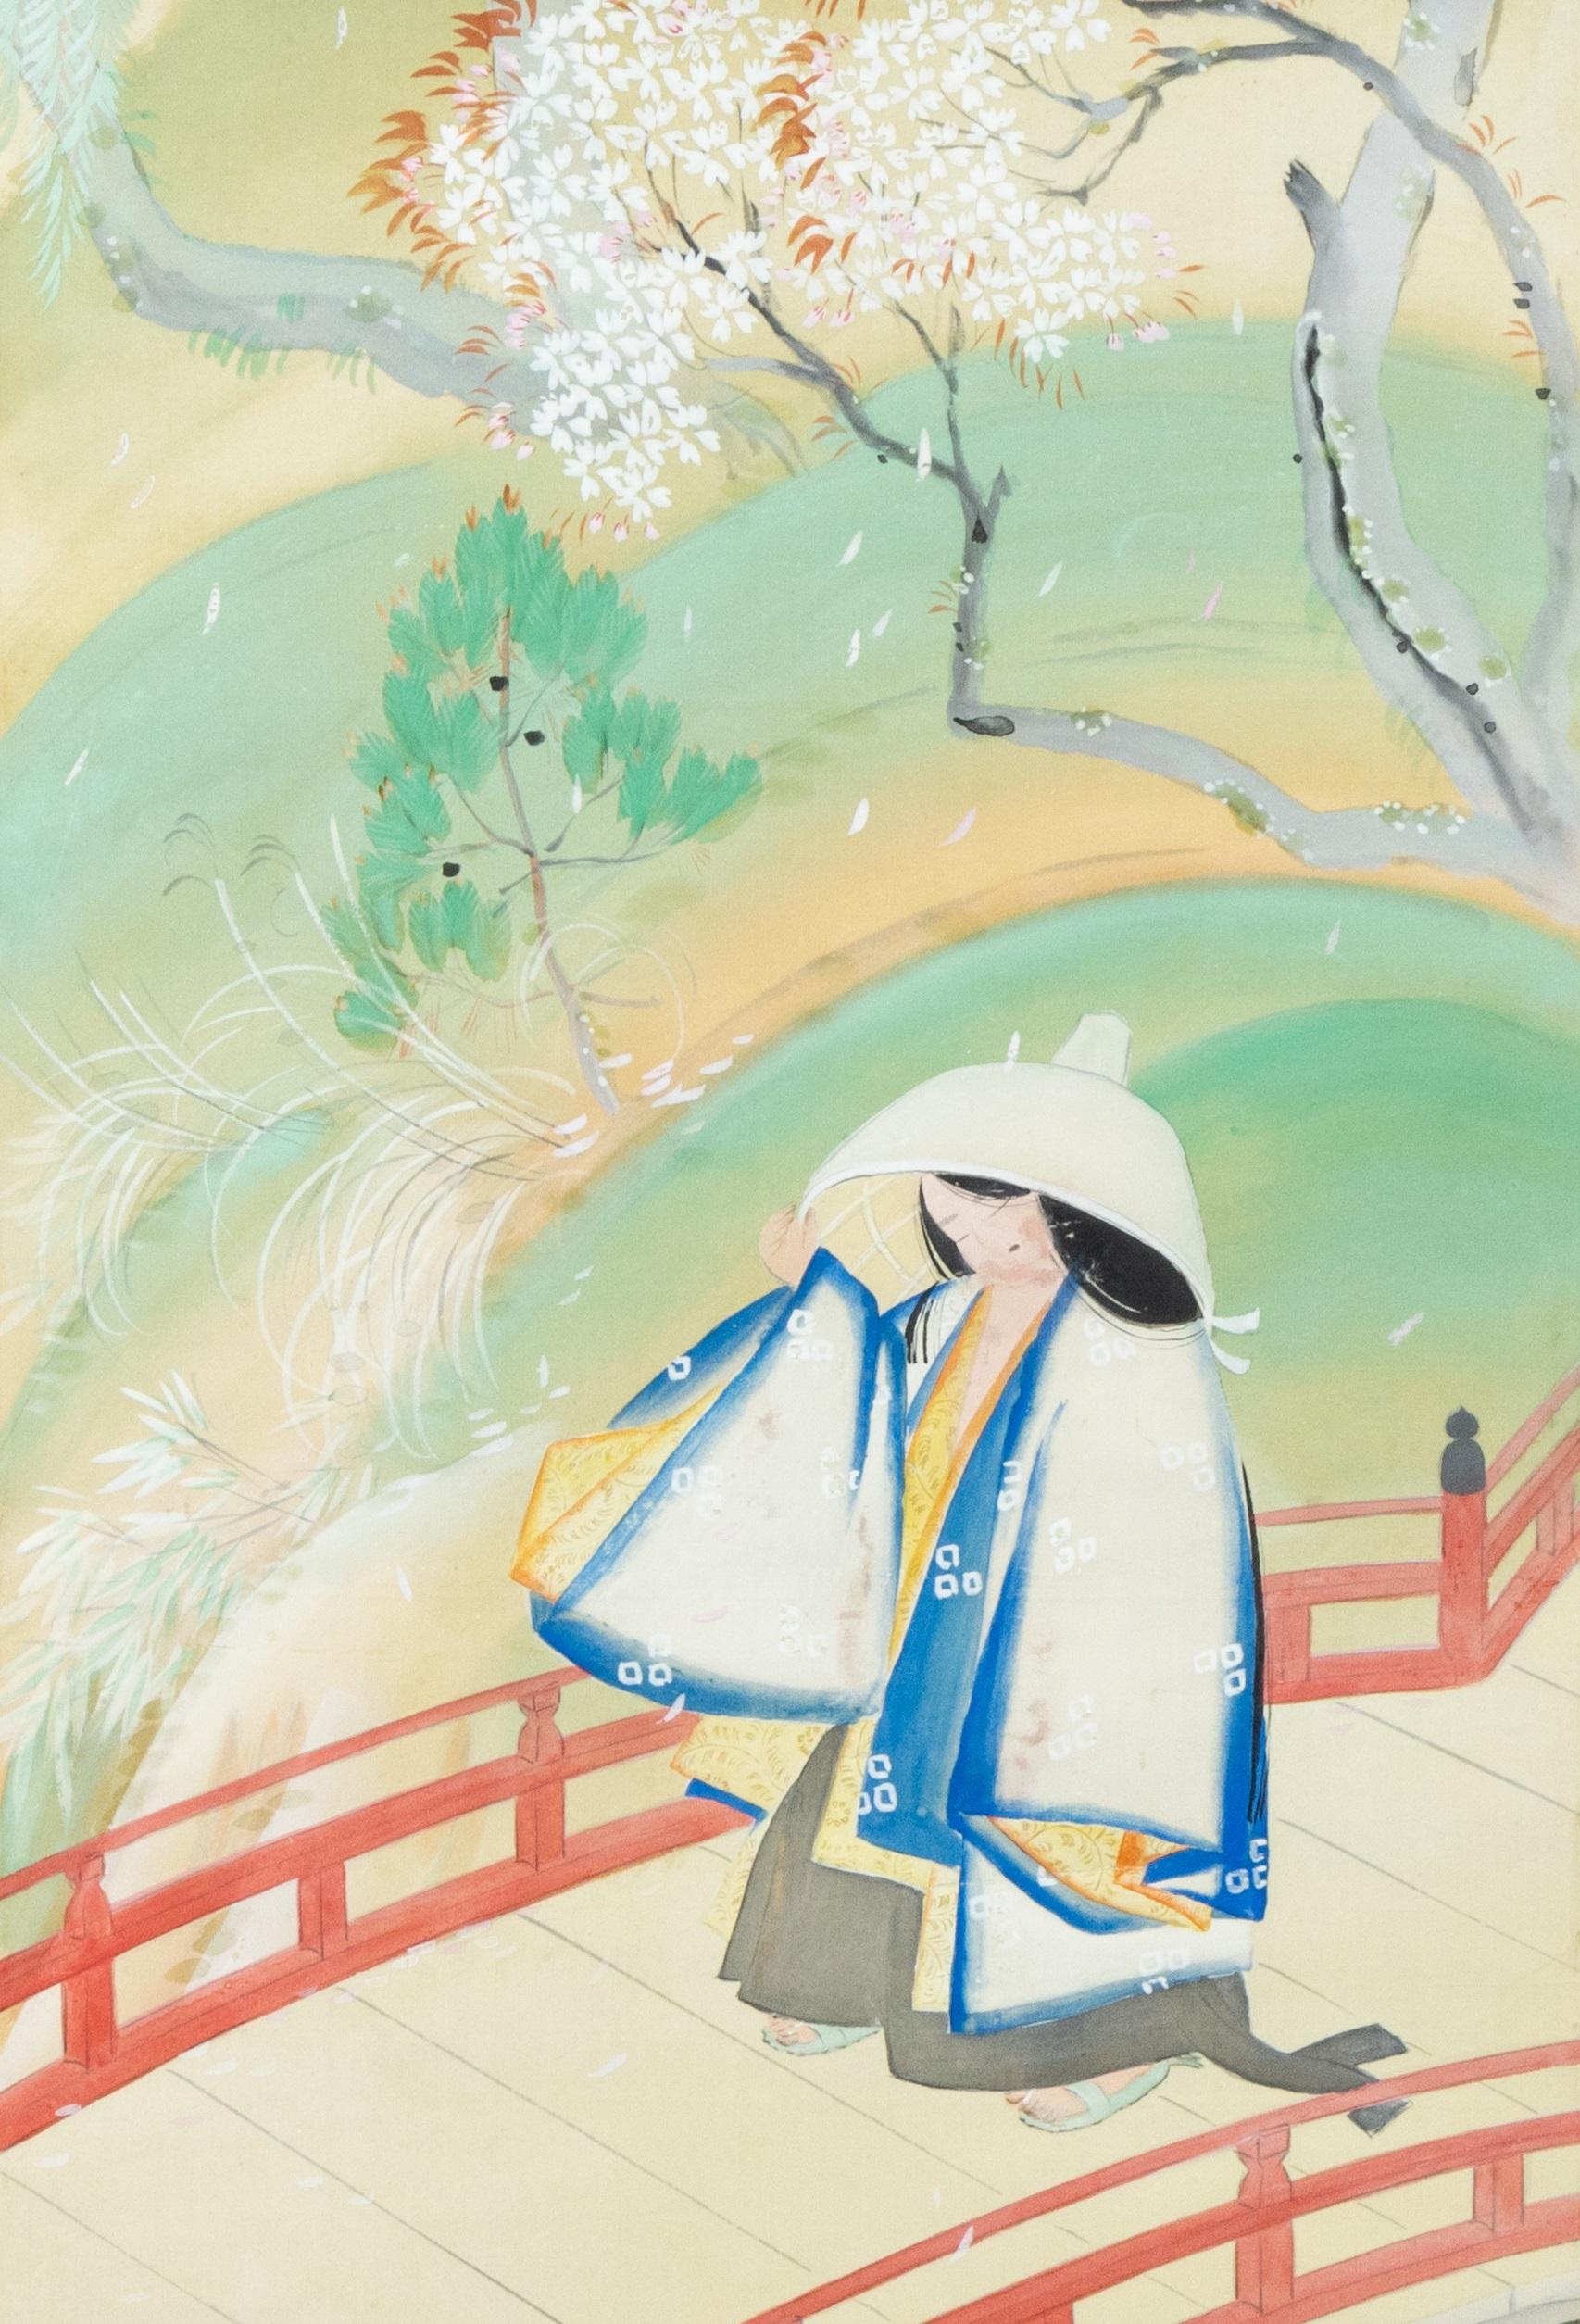 Japanse school Vrouw op brug
Rolschildering / scroll op zijde, benen rollers. B 77.5 x 36.9 / 160 x 49 cm
77.5 x 36.9 / 160 x 49 cm.